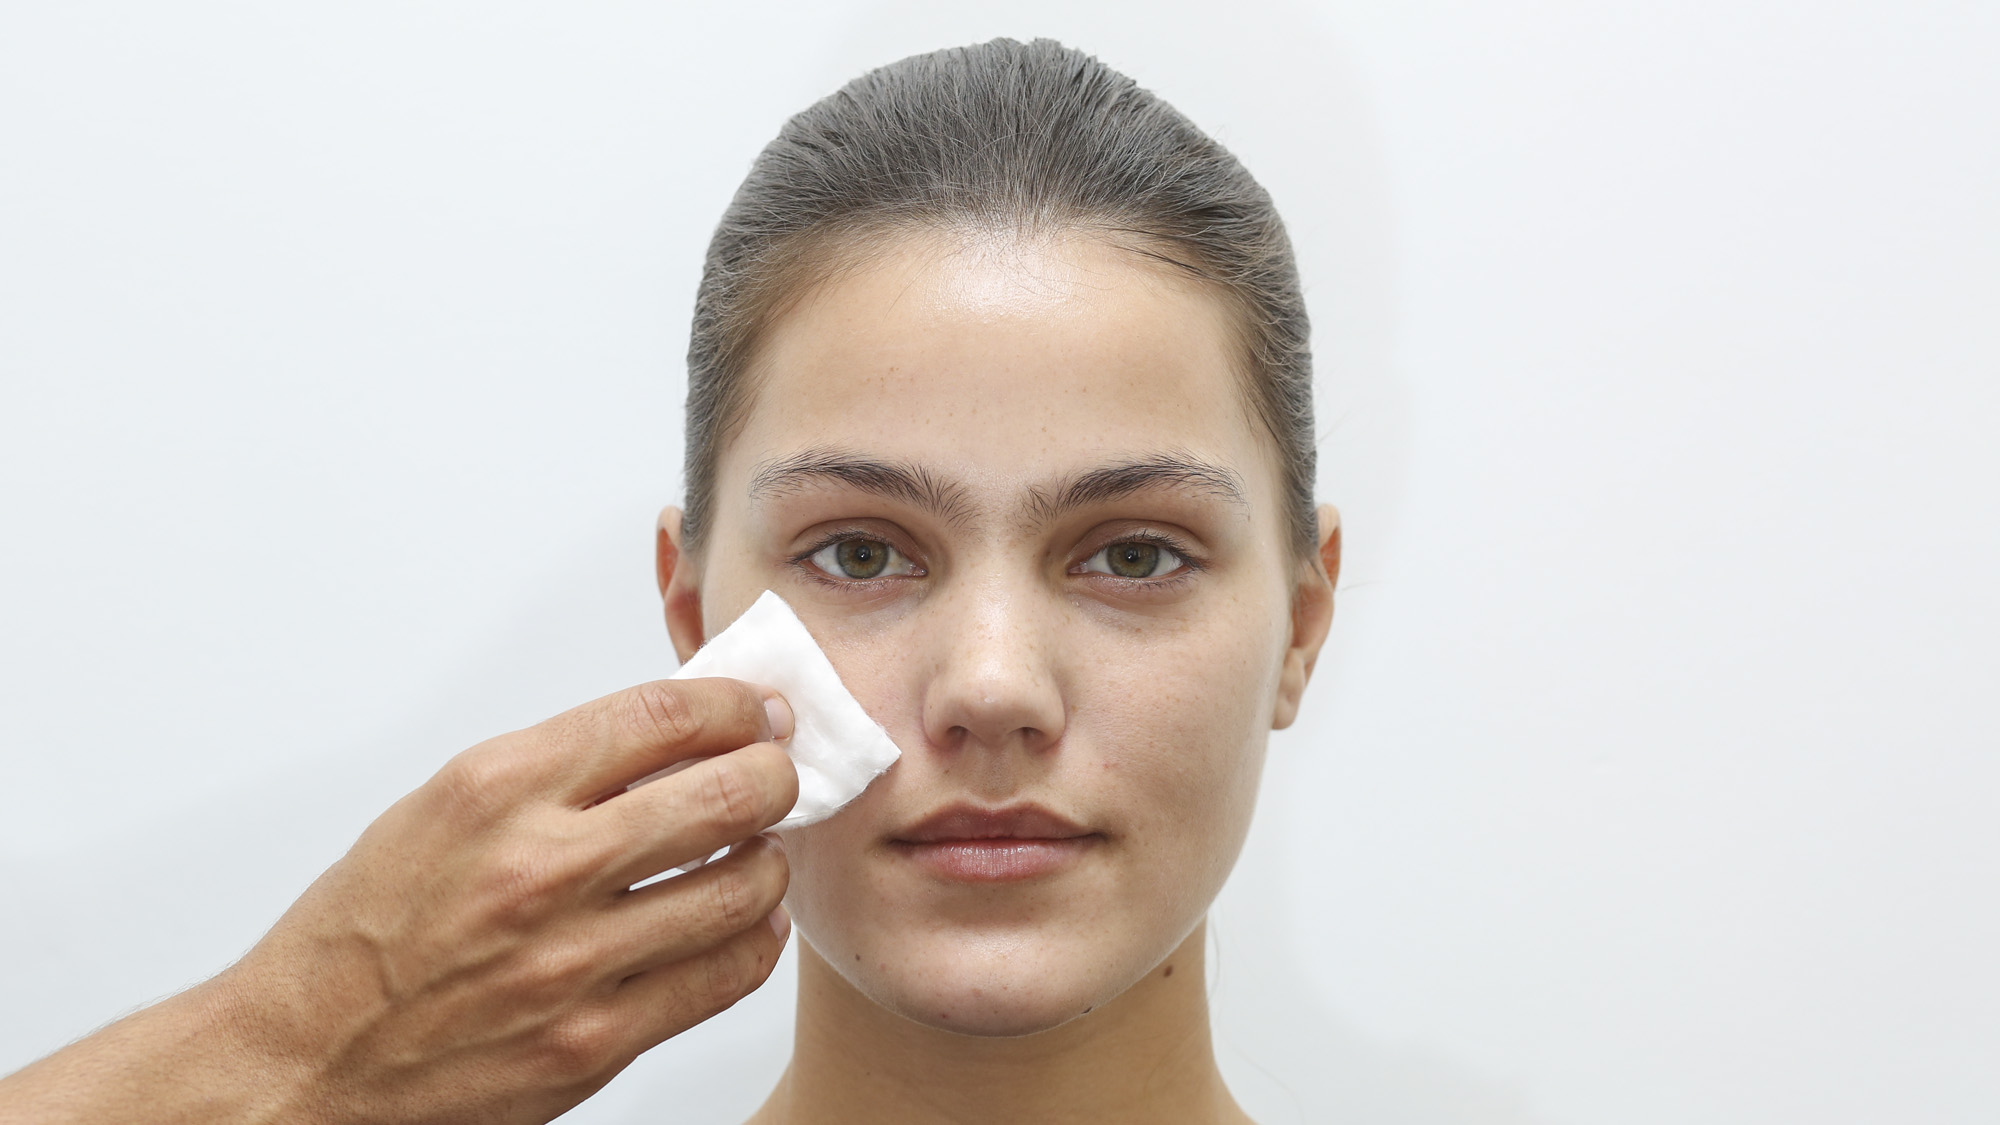 Higienize a pele para retirar as impurezas. Use adstringente se a pele for oleosa e tônico se for seca